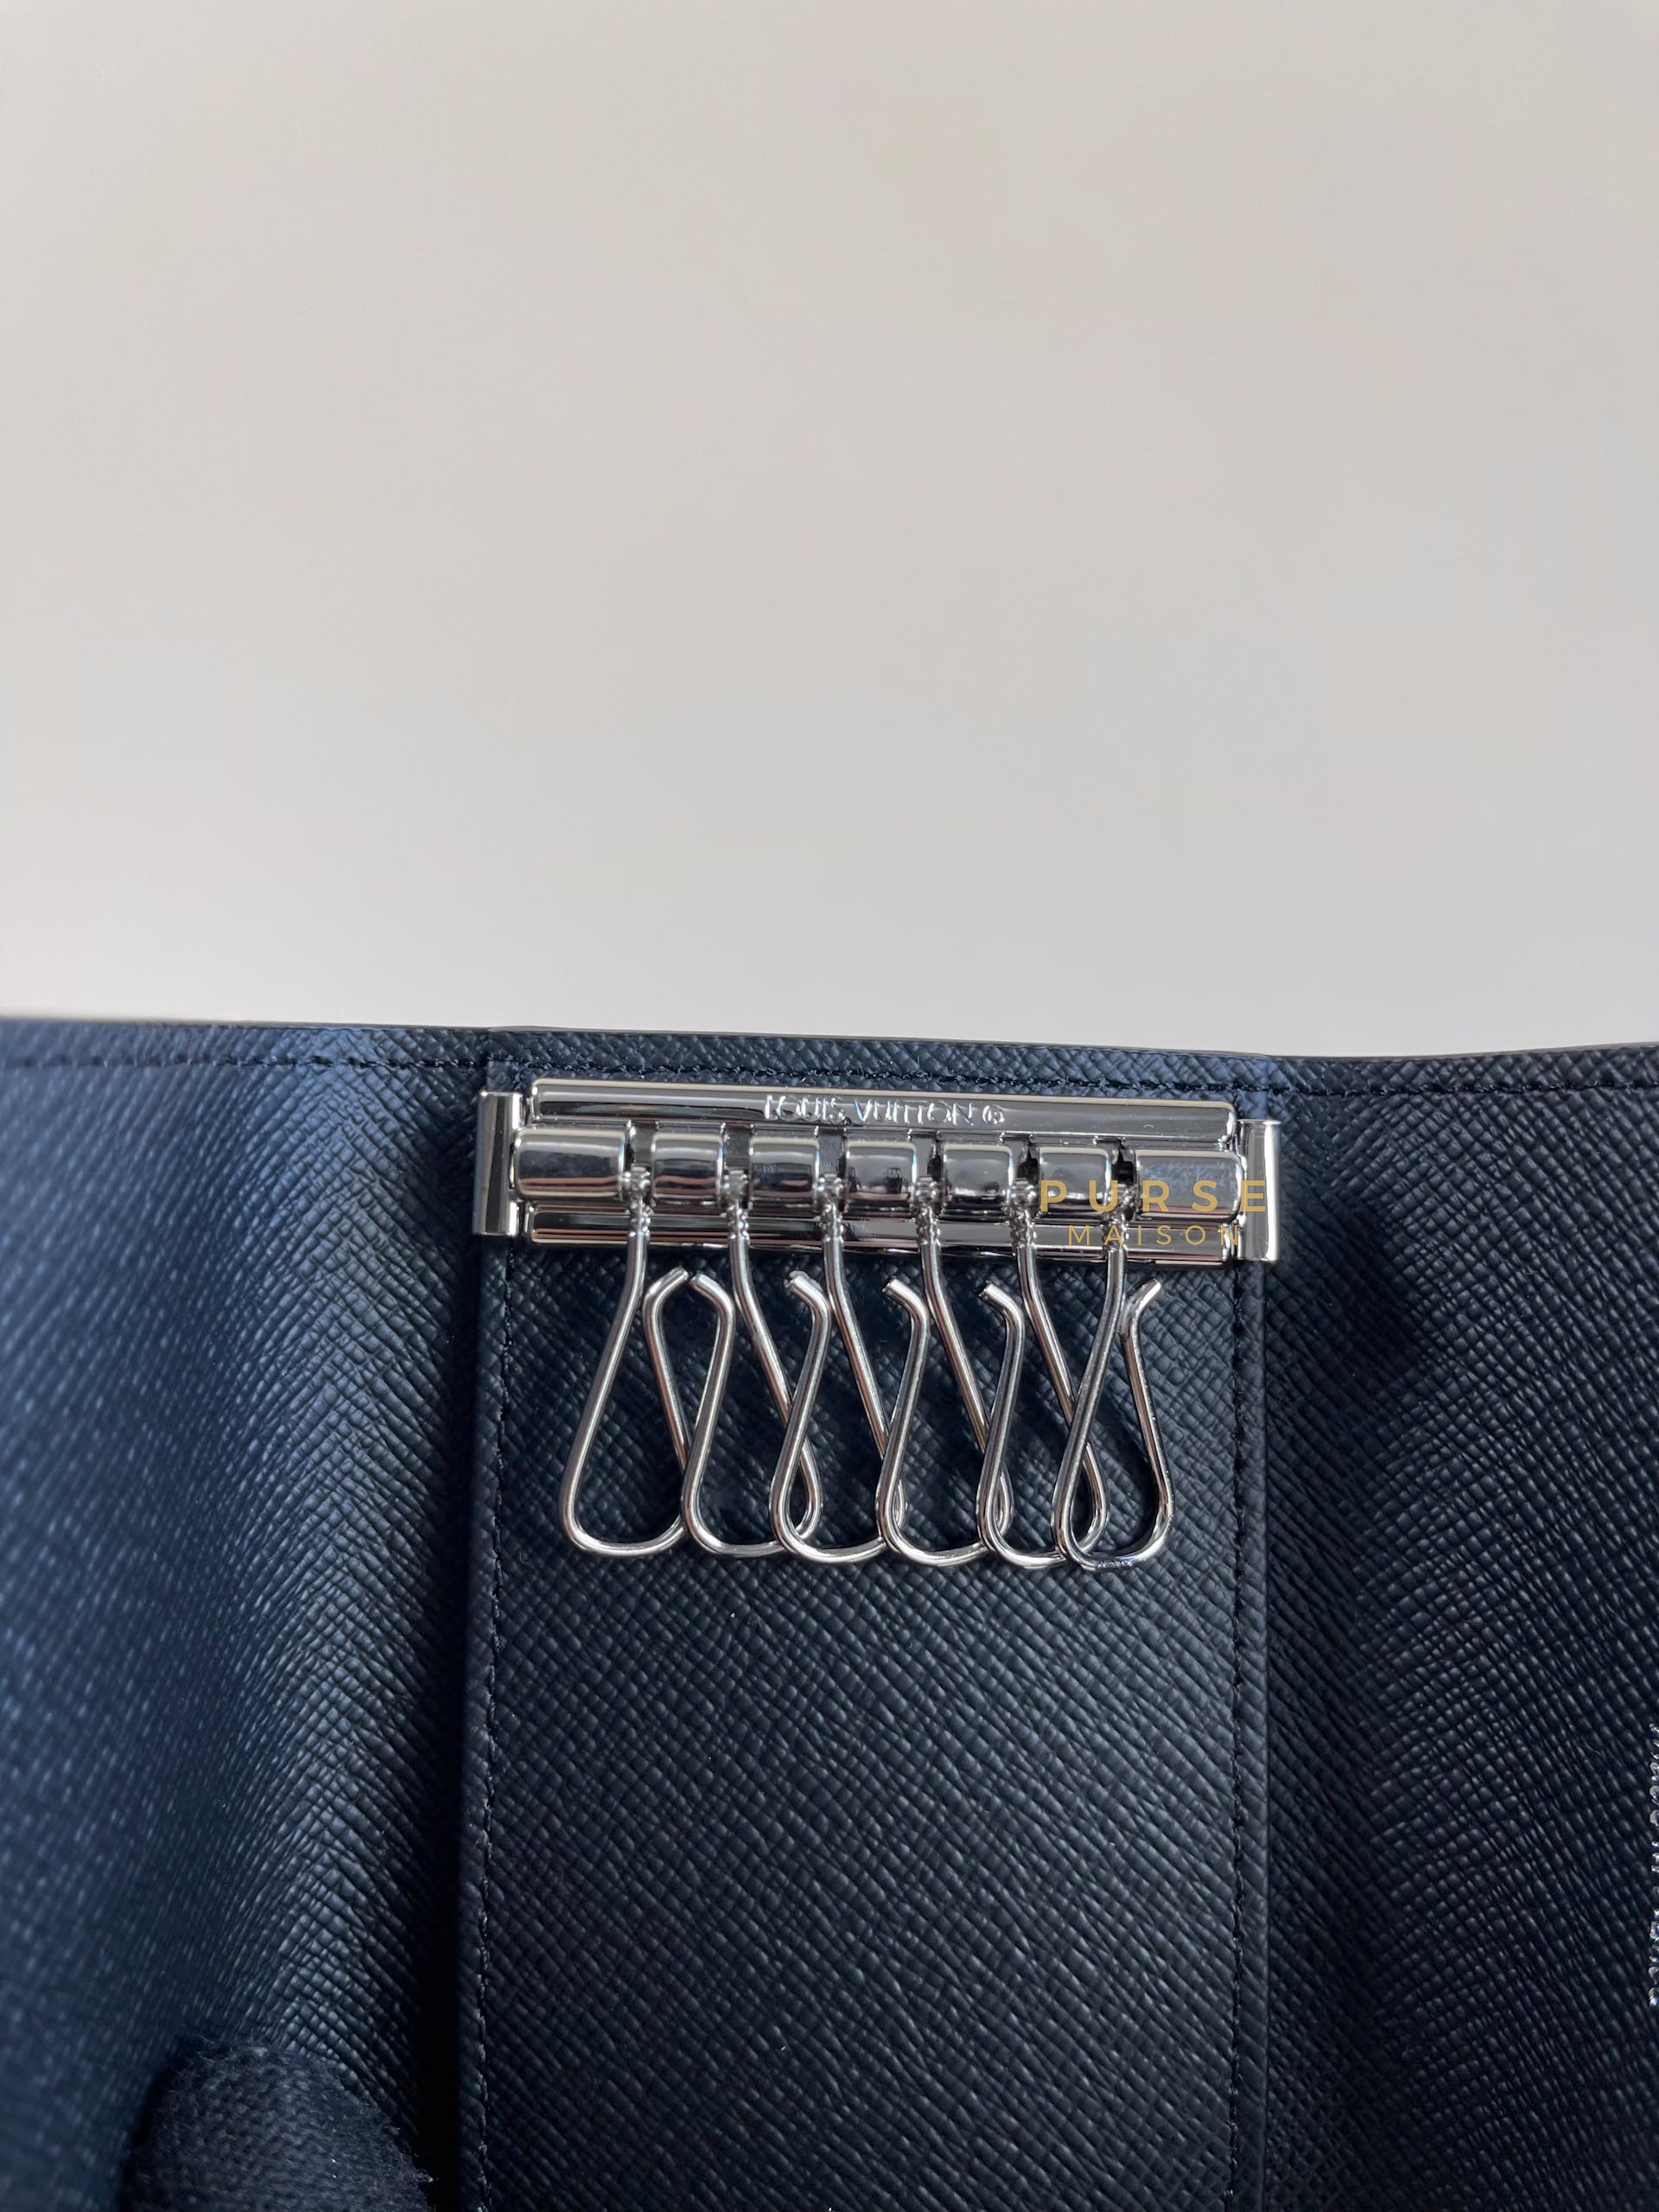 Louis Vuitton 6 Keyholder Wallet in Damier Graphite Canvas (Date Code: CT1178) | Purse Maison Luxury Bags Shop